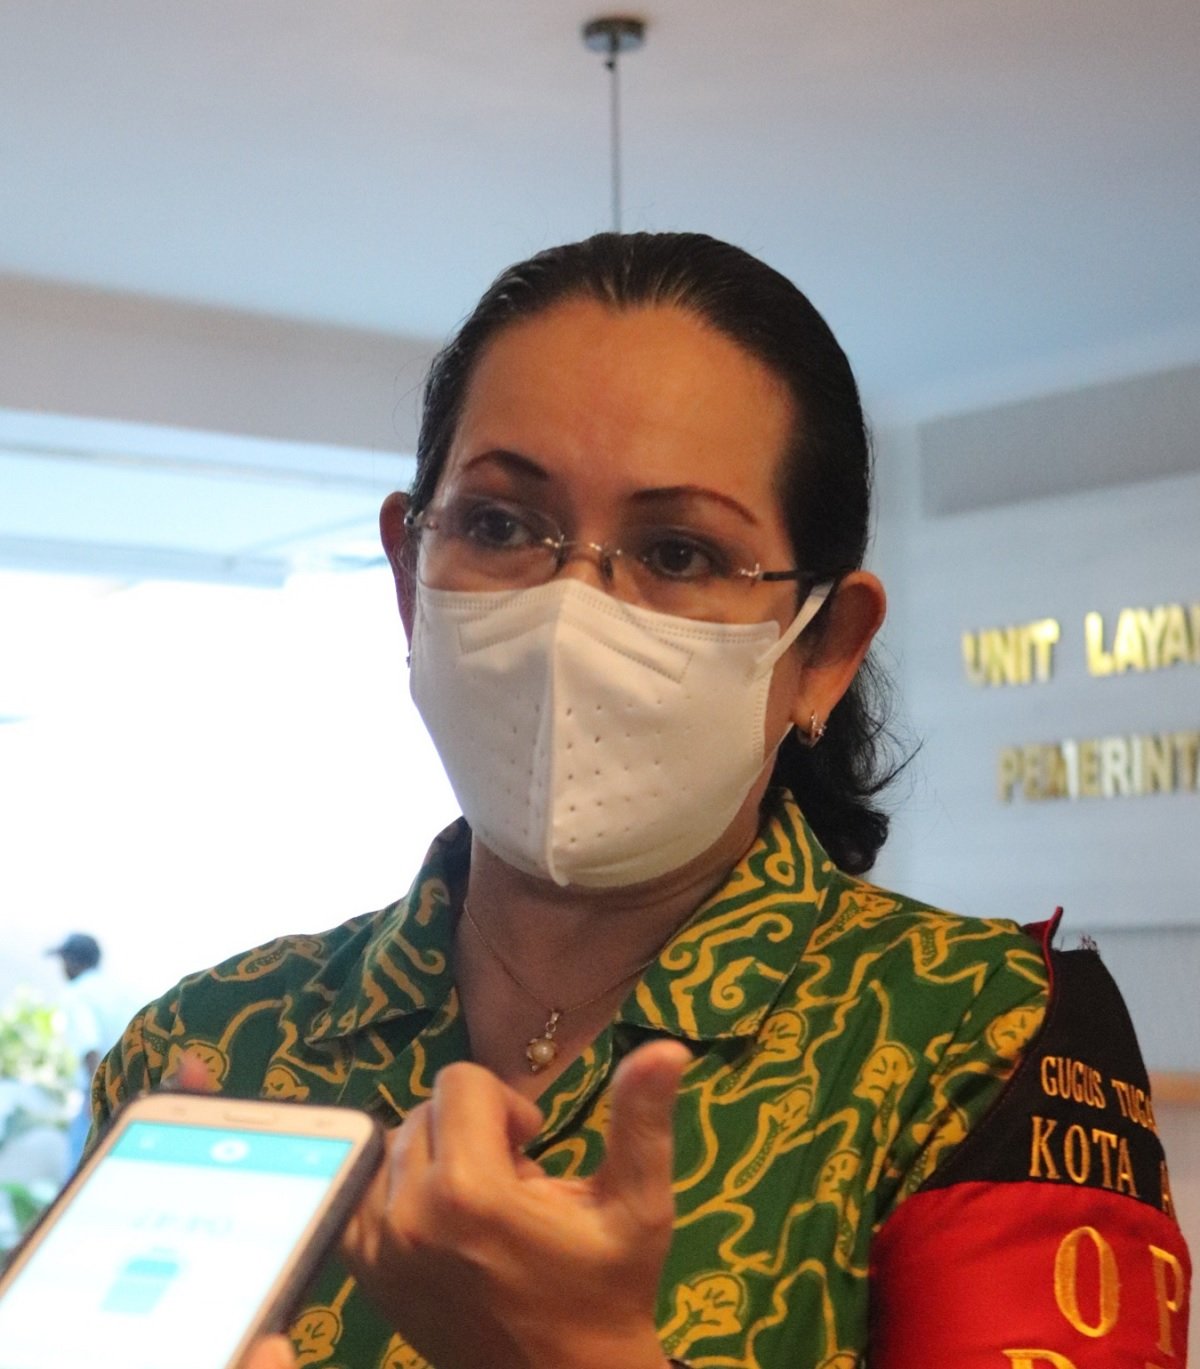 Kepala Dinas Kesehatan Kota Ambon, Wendy Pelupessy